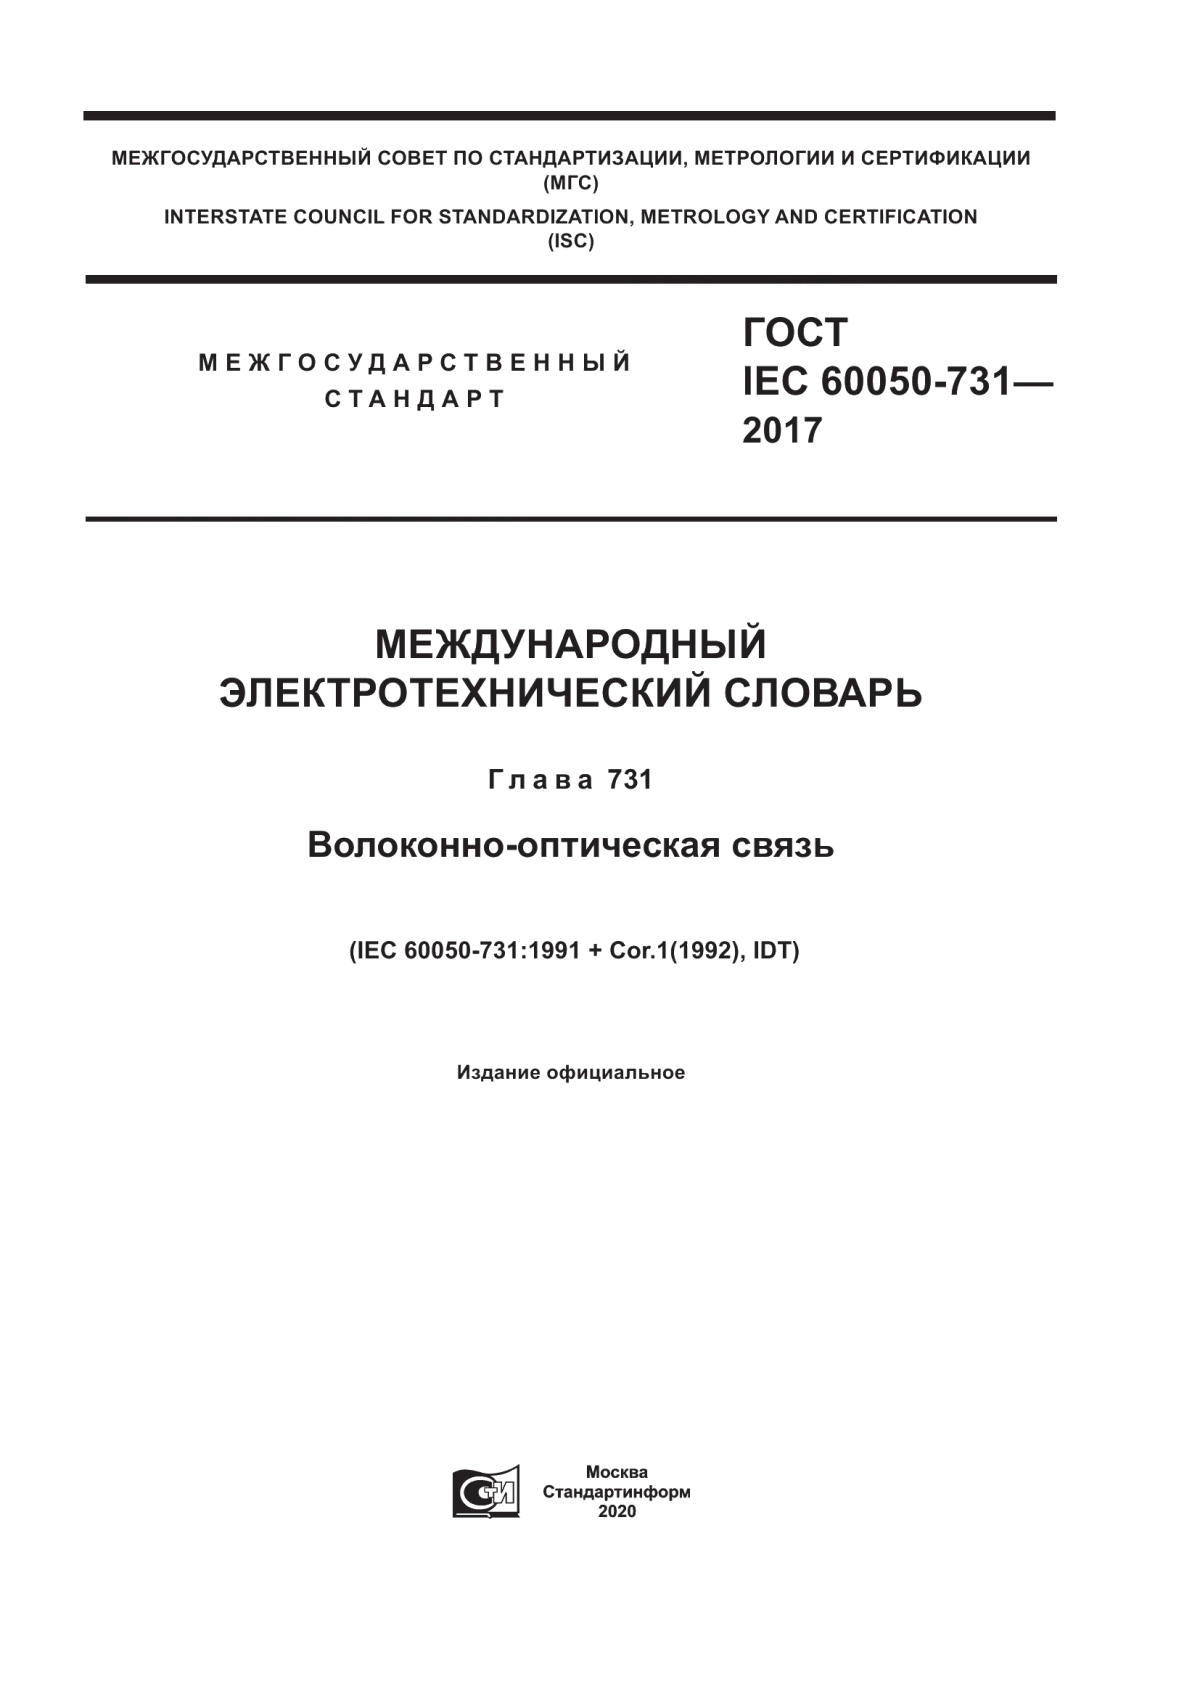 ГОСТ IEC 60050-731-2017 Международный электротехнический словарь. Глава 731. Волоконно-оптическая связь